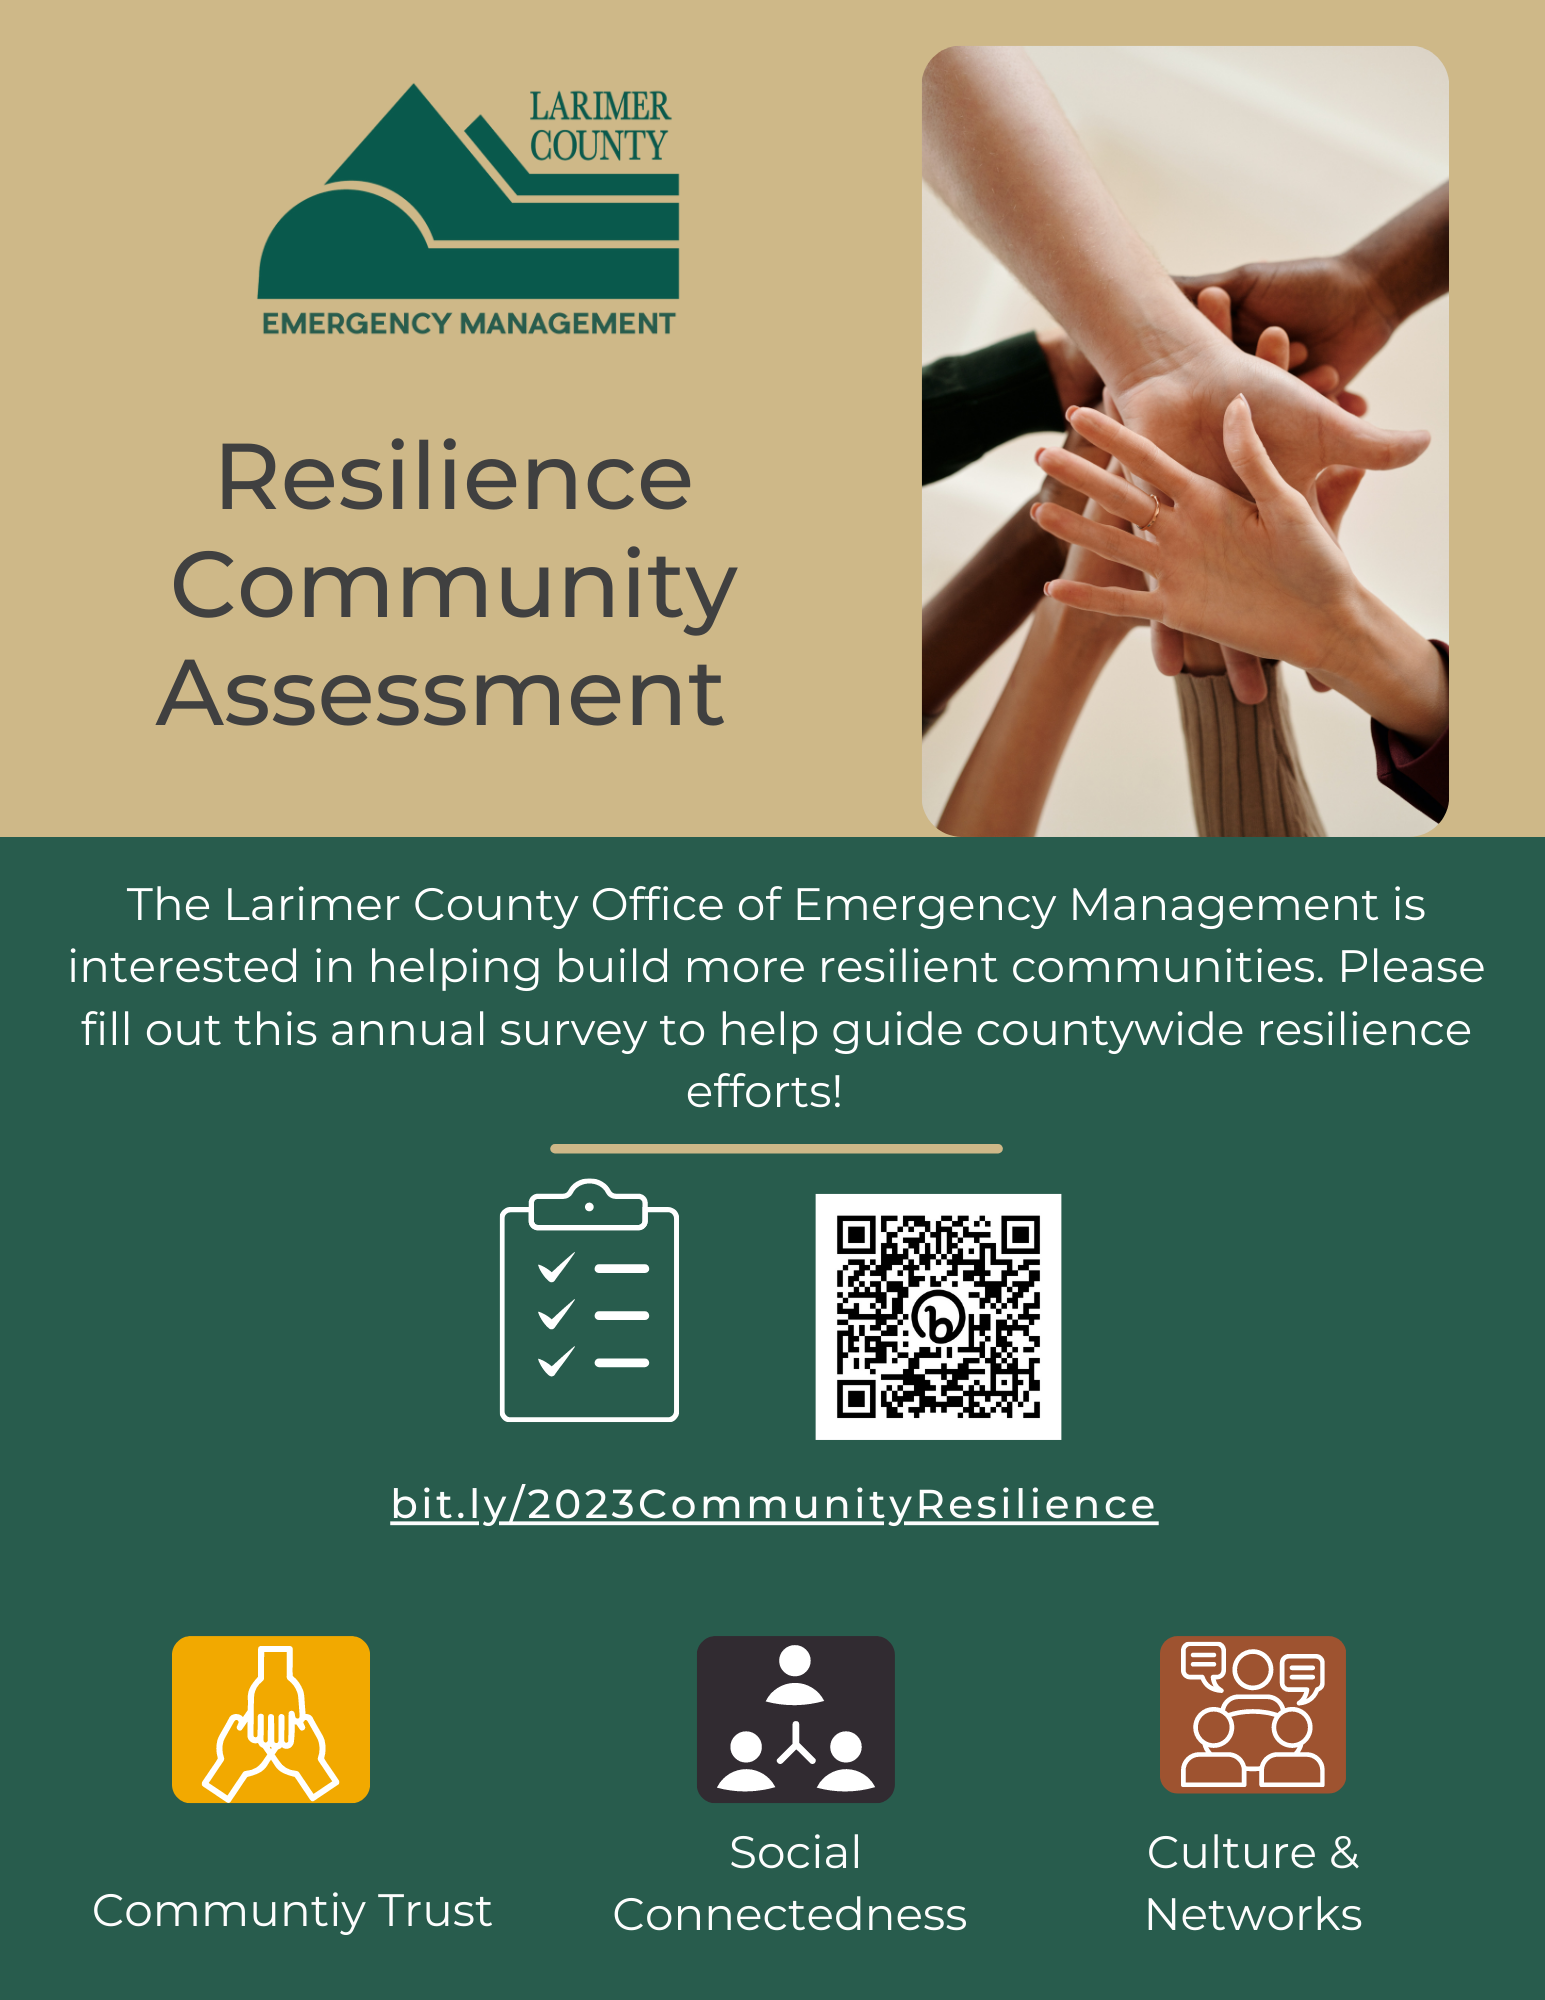 画像 1: ラリマー郡緊急事態管理局のコミュニティのレジリエンス評価